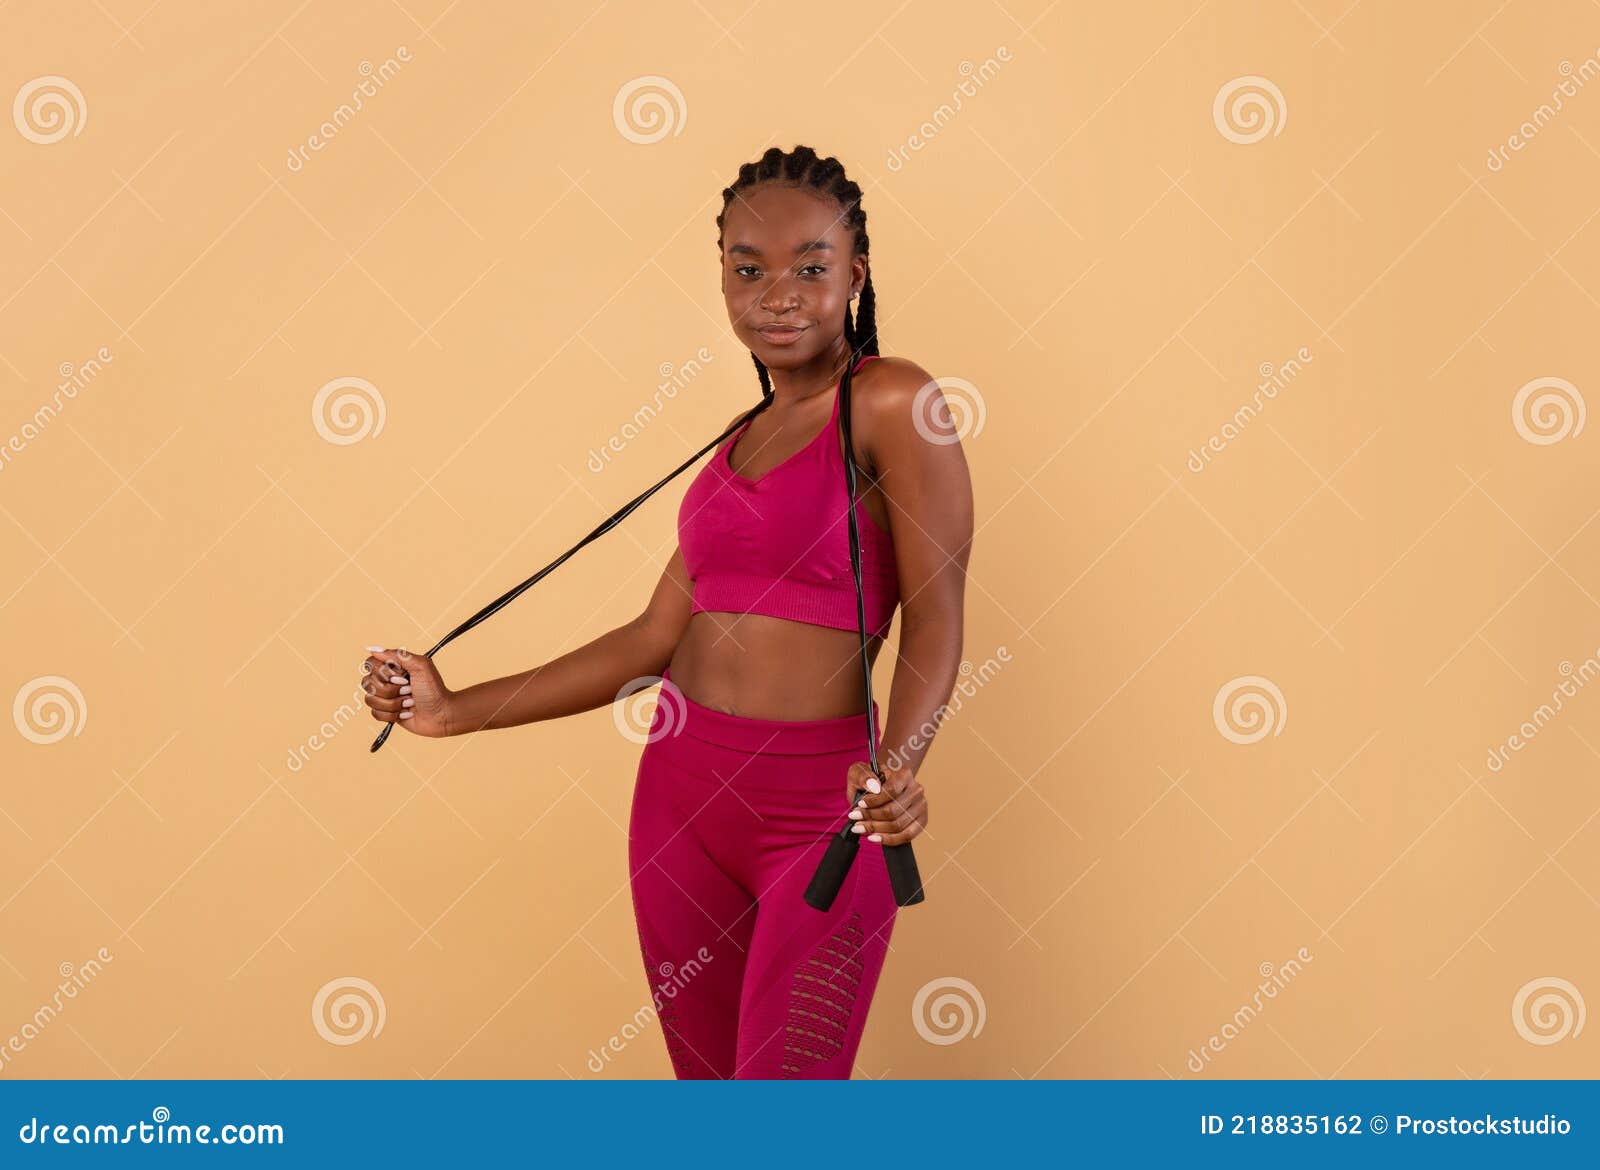 jeune femme en tenue de sport sur fond beige. femme fitness en